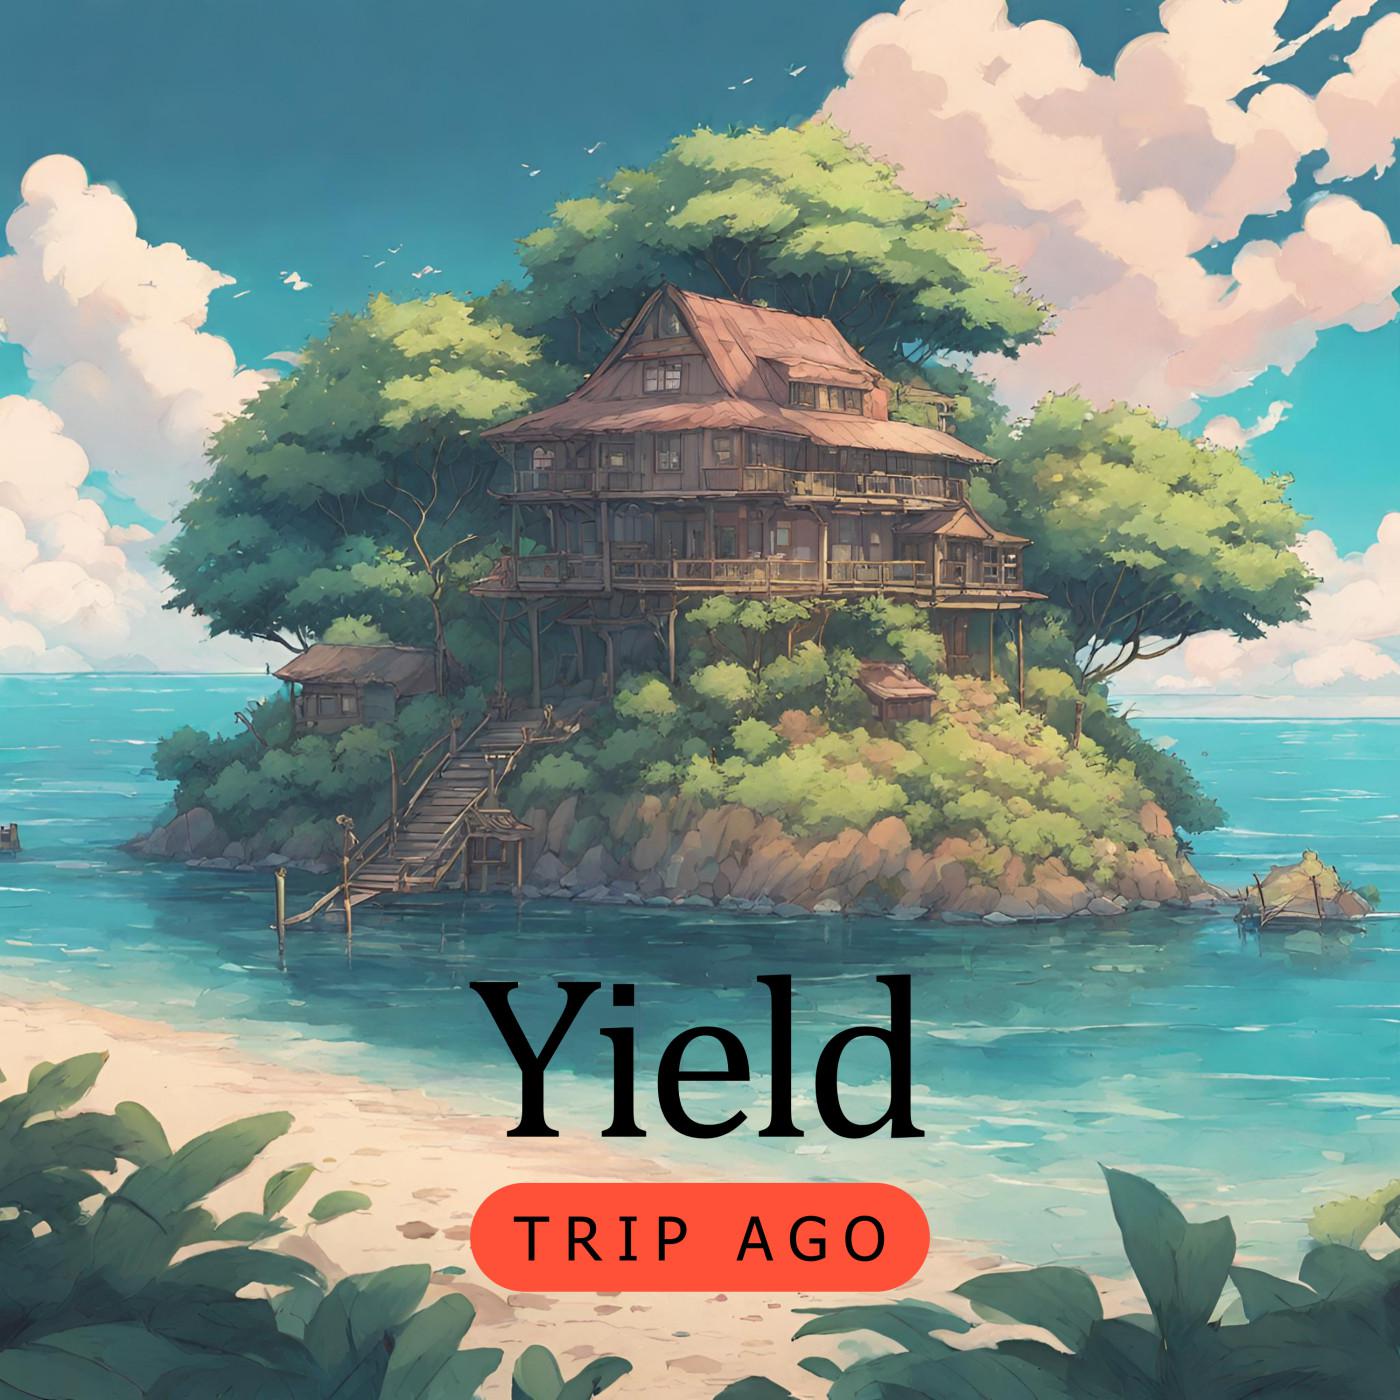 Trip Ago - Yield